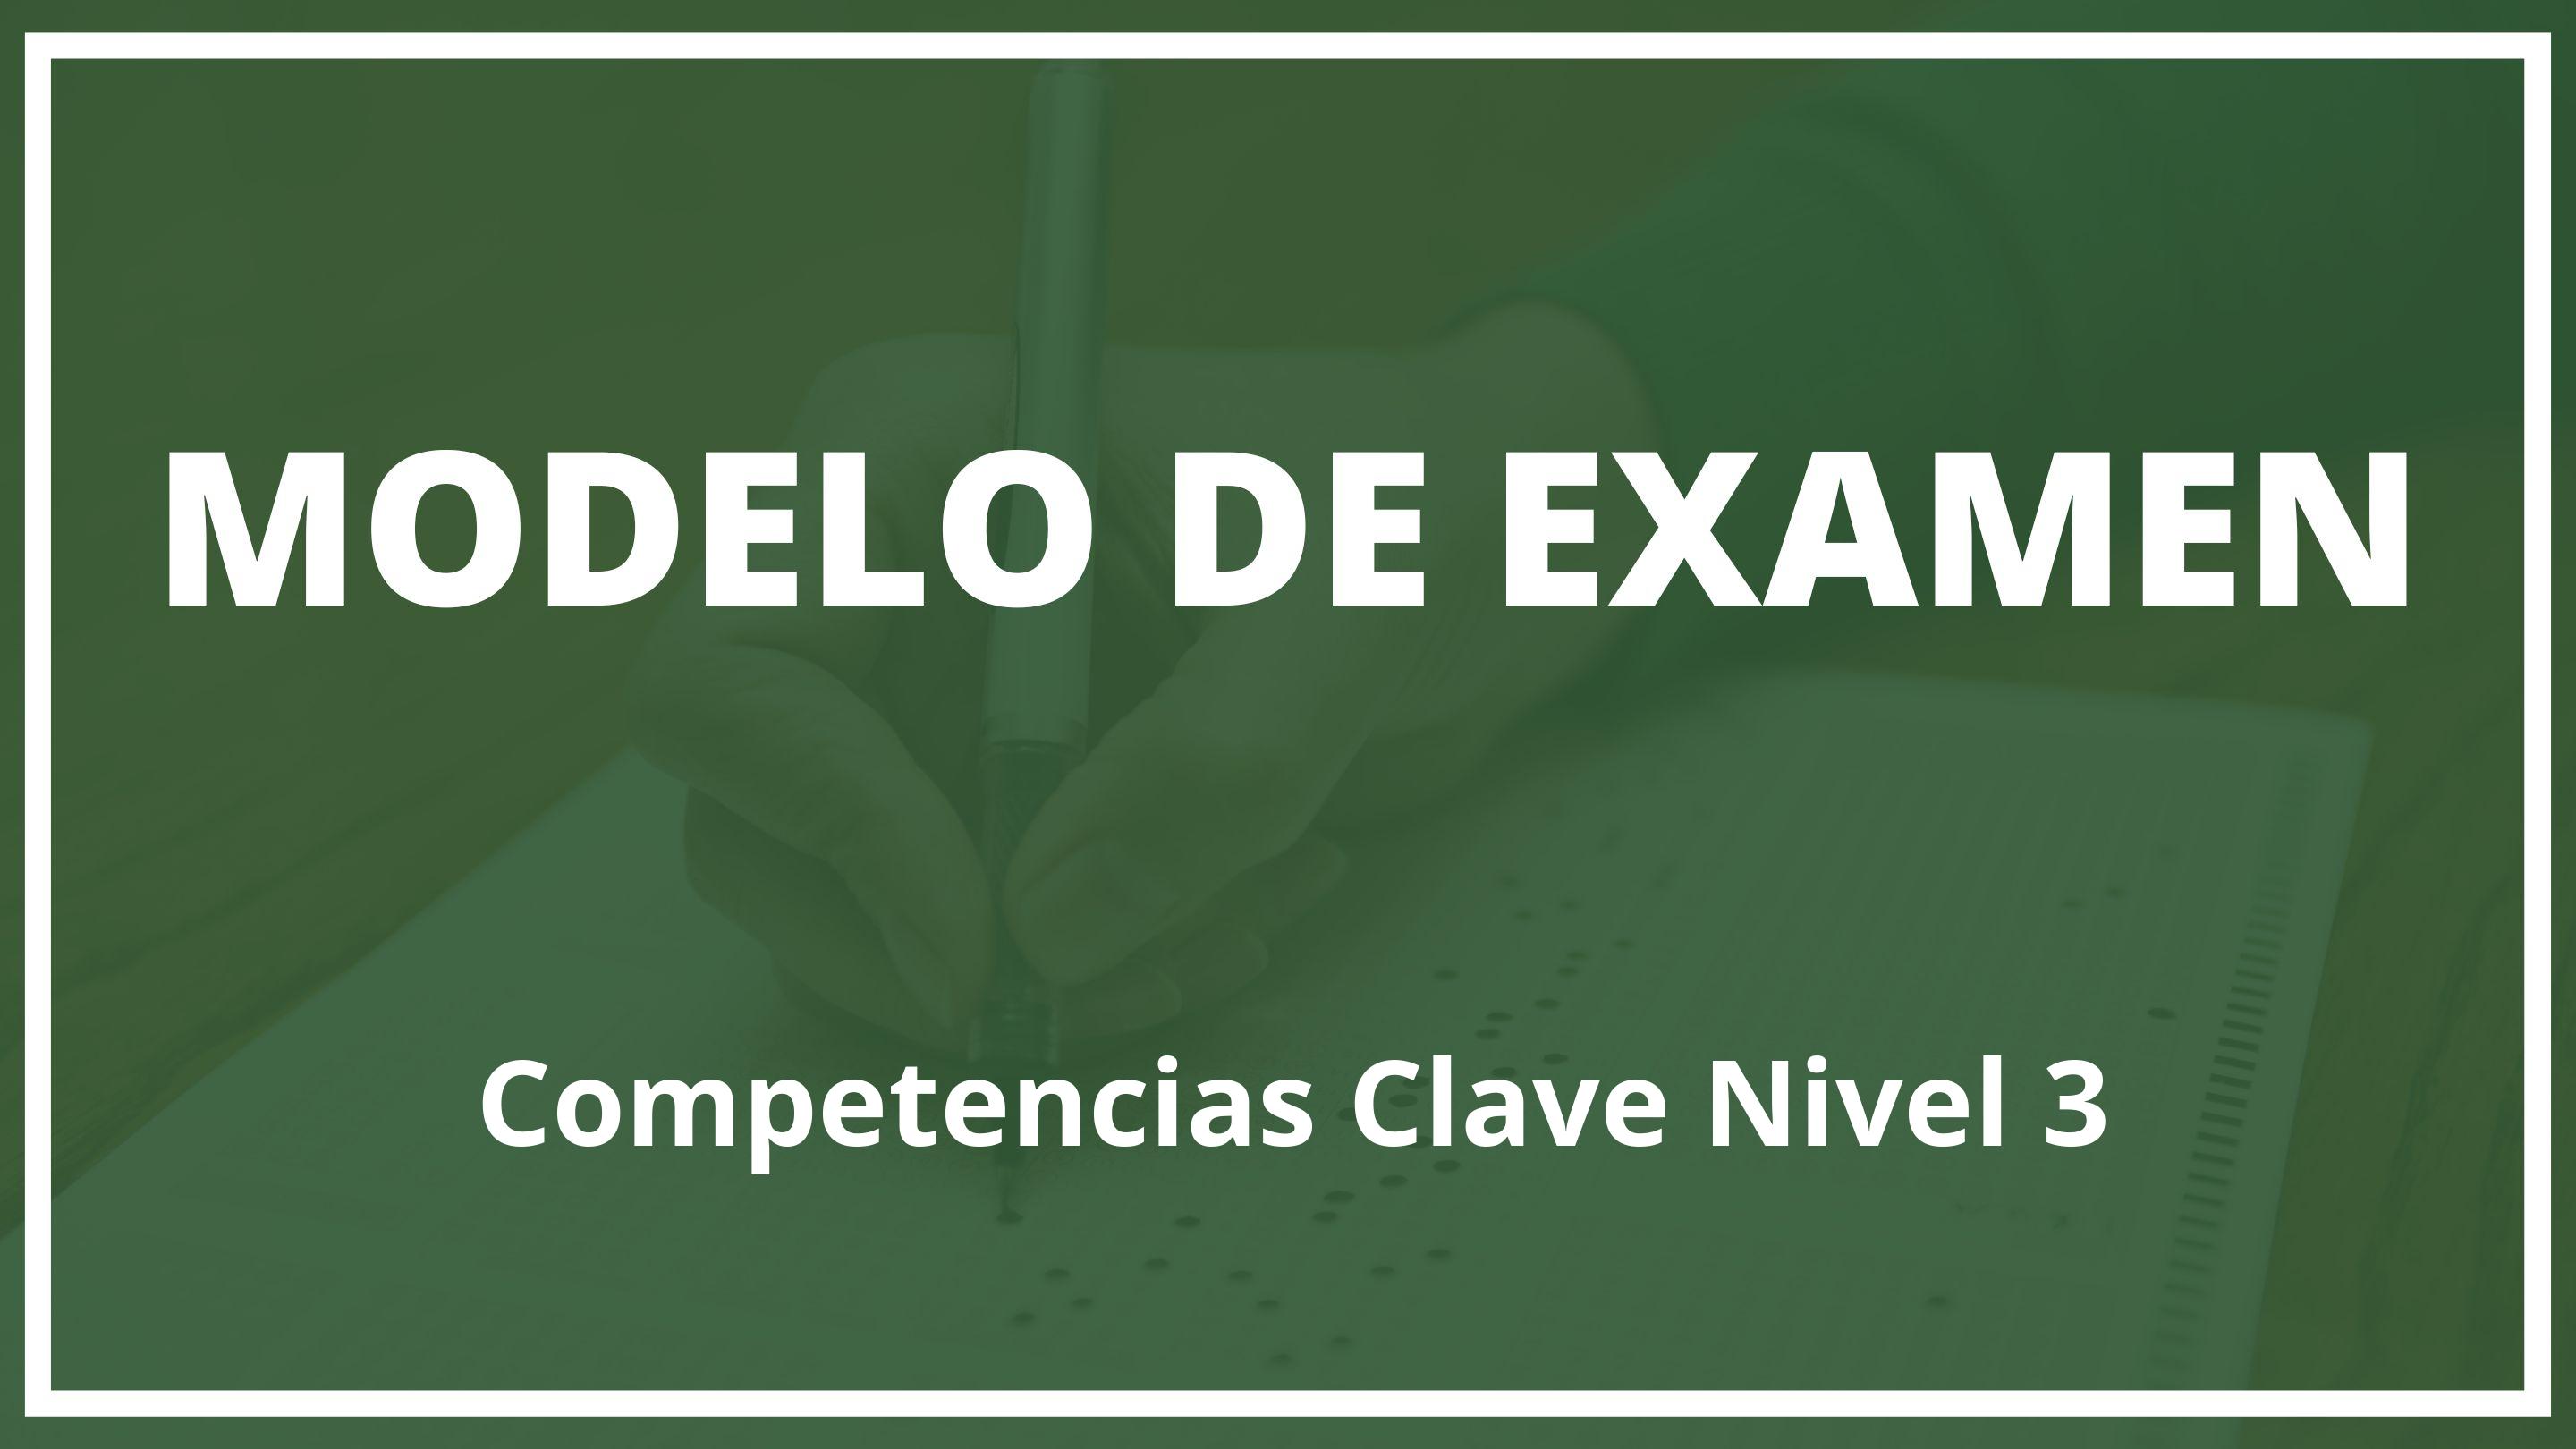 Examen Competencias Clave Nivel 3